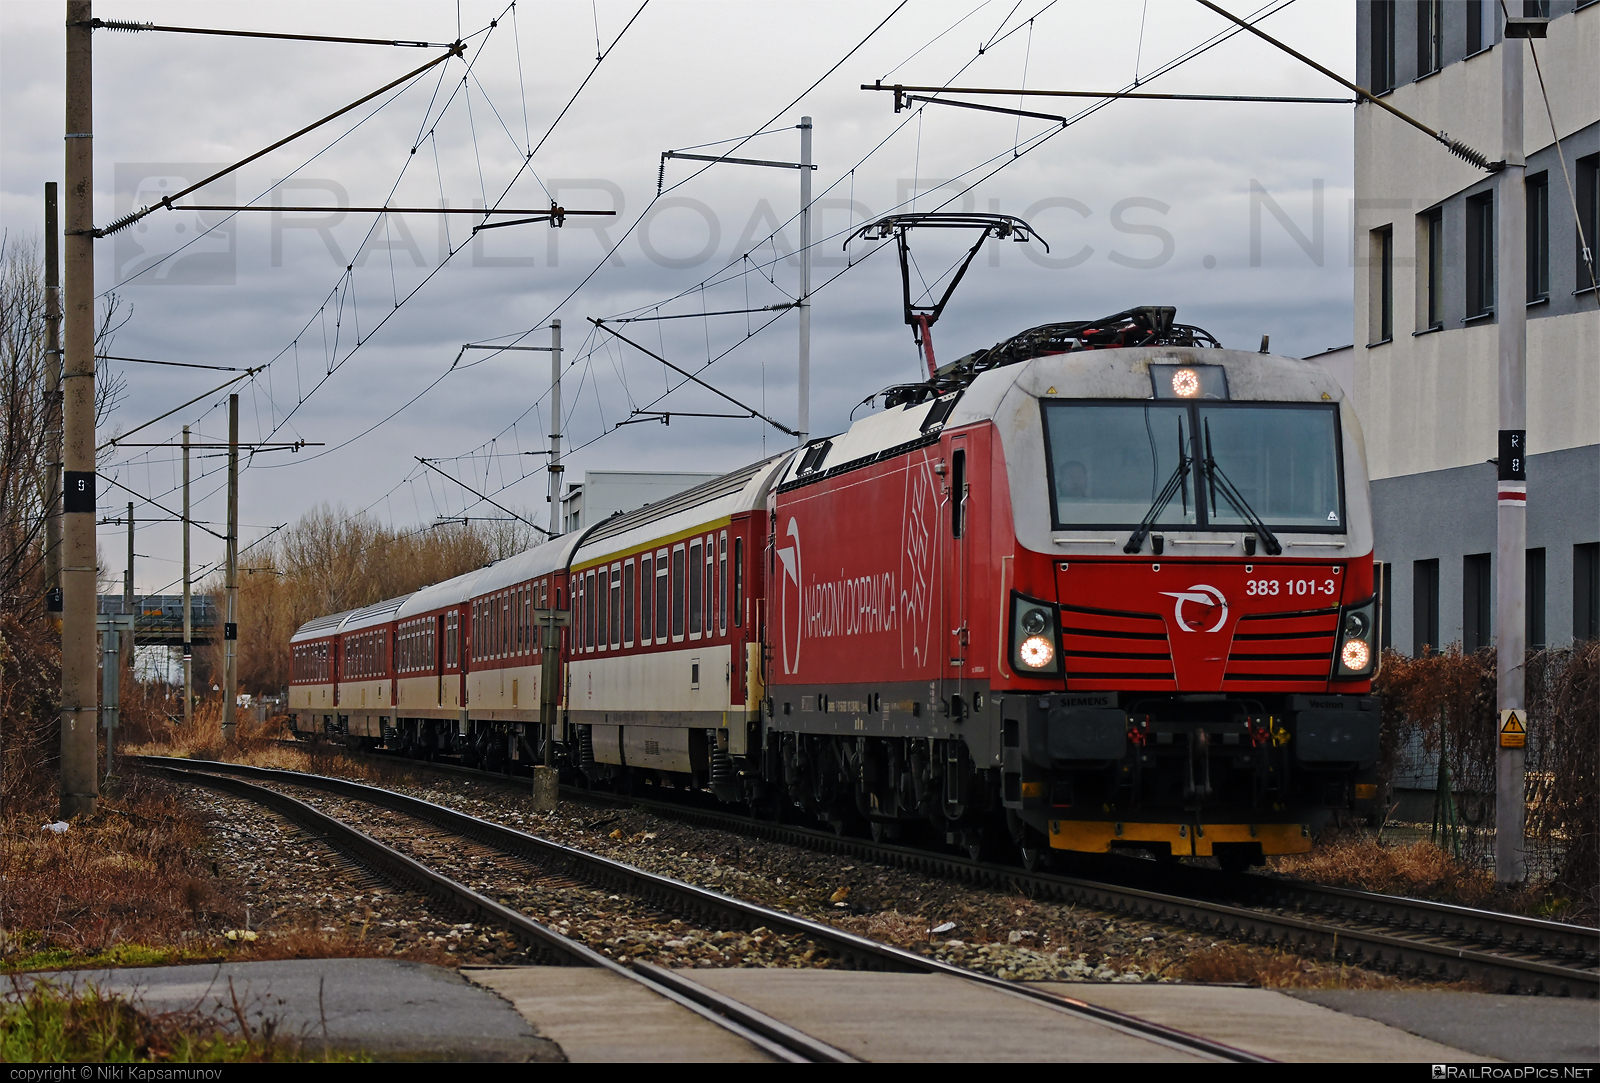 Siemens Vectron MS - 383 101-3 operated by Železničná Spoločnost' Slovensko, a.s. #RollingStockLease #RollingStockLeaseSro #ZeleznicnaSpolocnostSlovensko #raill #siemens #siemensVectron #siemensVectronMS #vectron #vectronMS #zssk